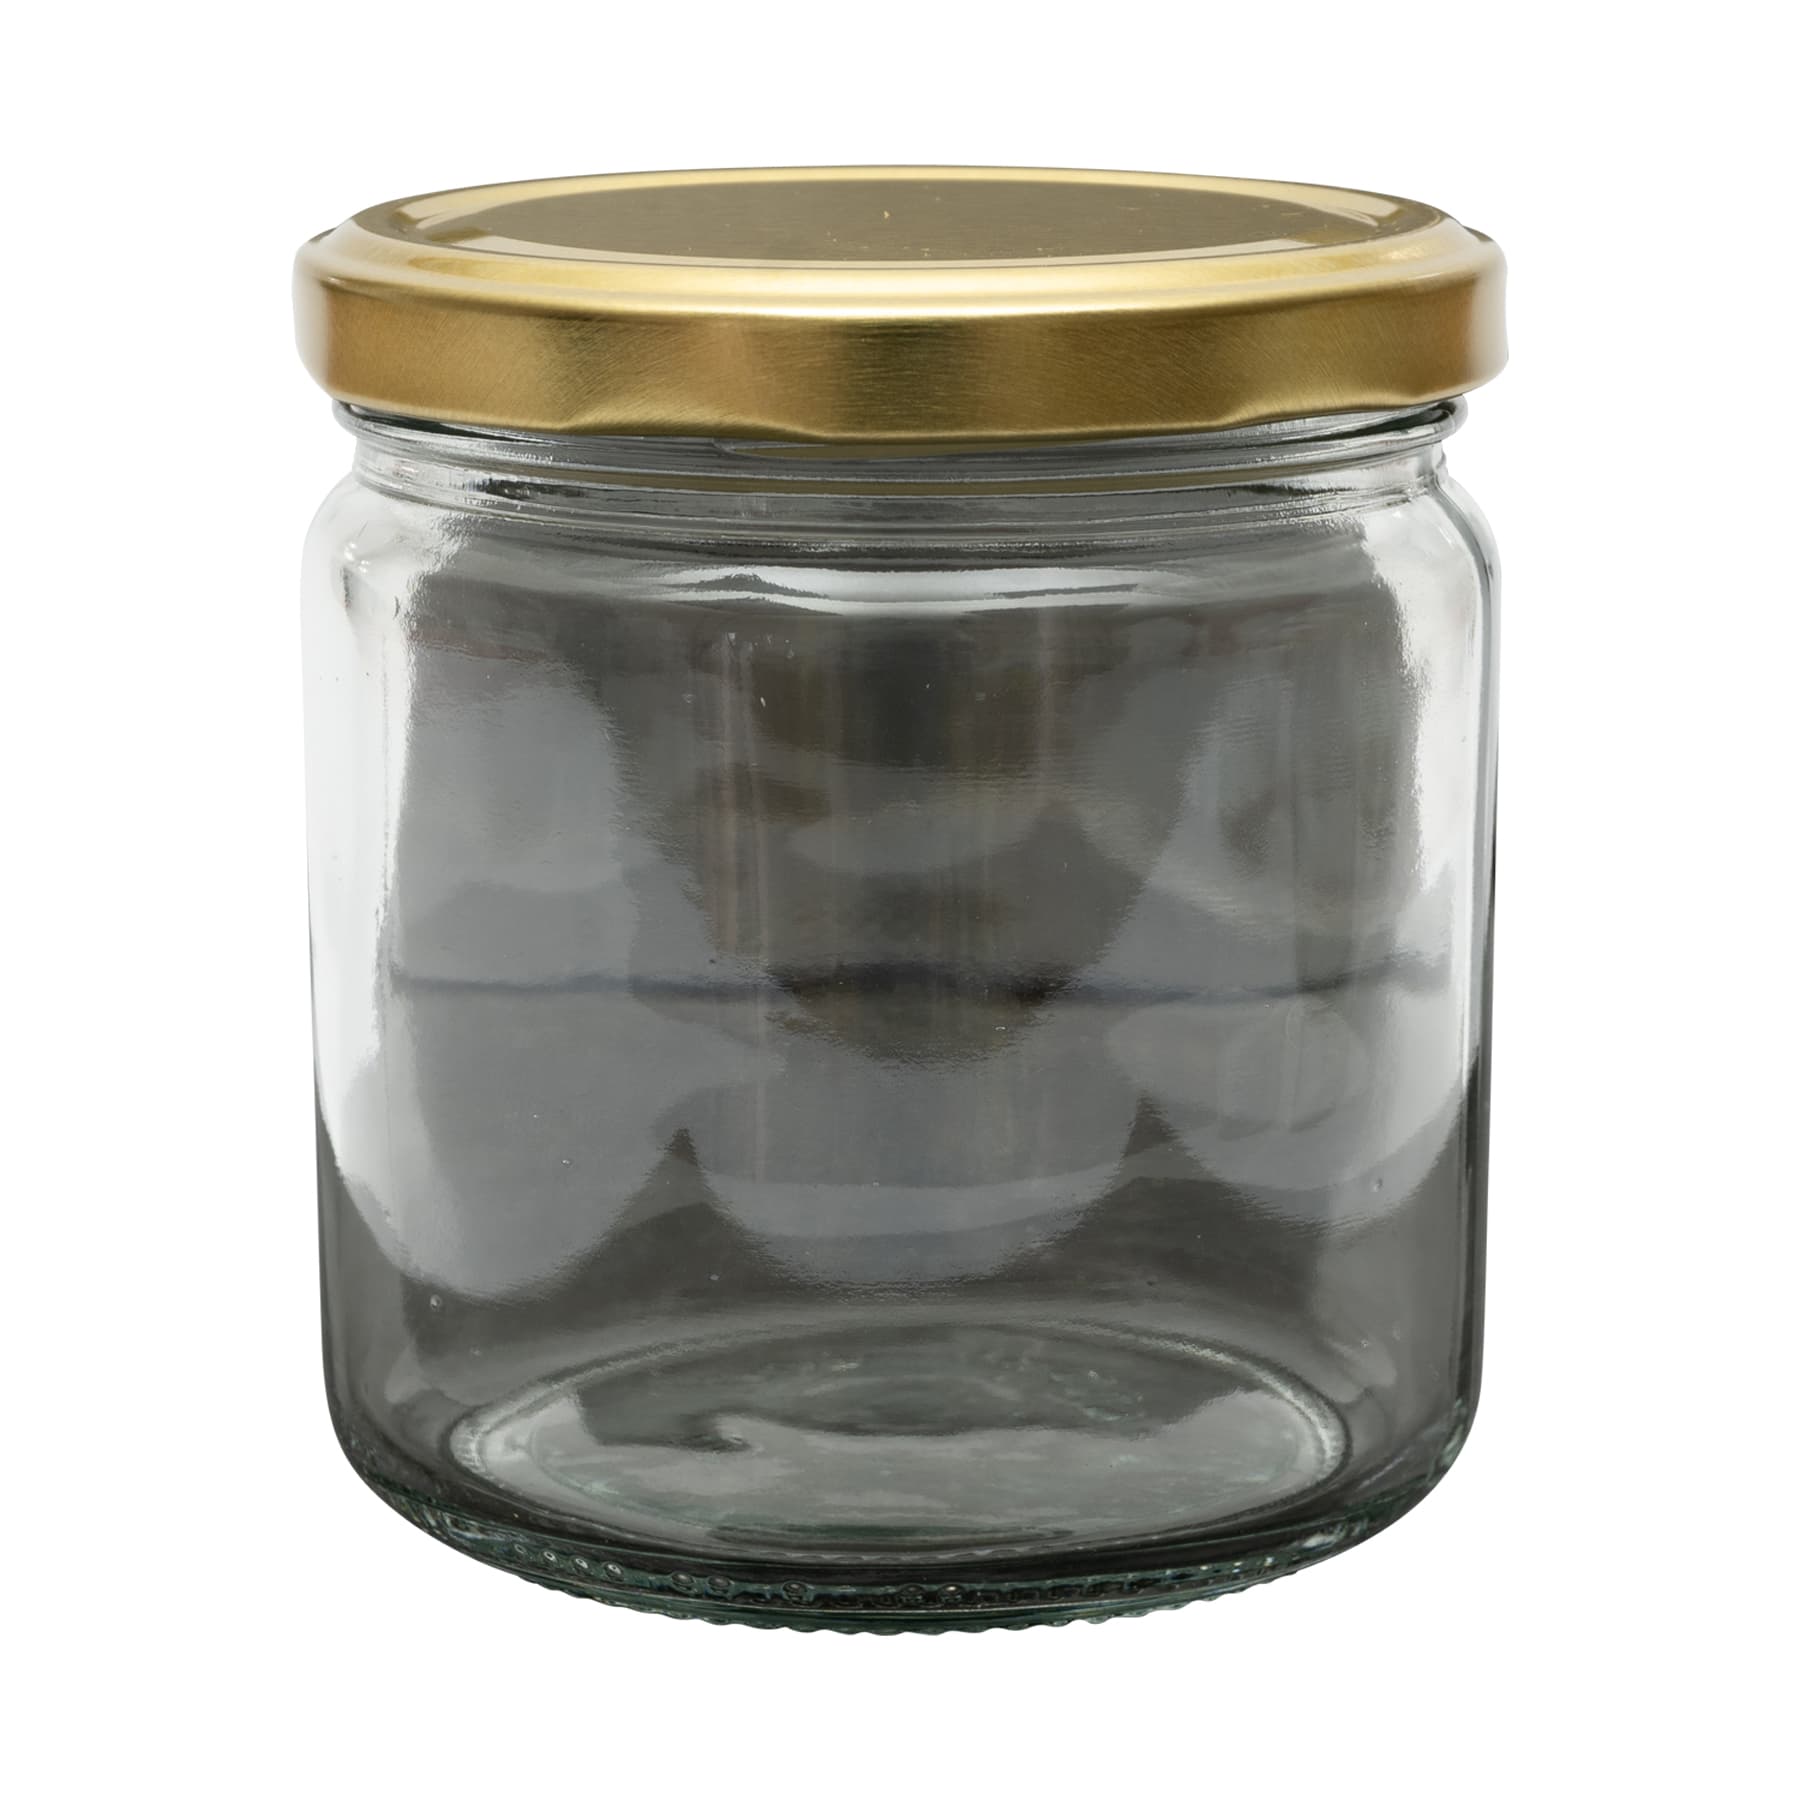 Rundglas 500g (405 ml), mit T0  Deckel gold 82 mm im 12 Karton Selbstabholung